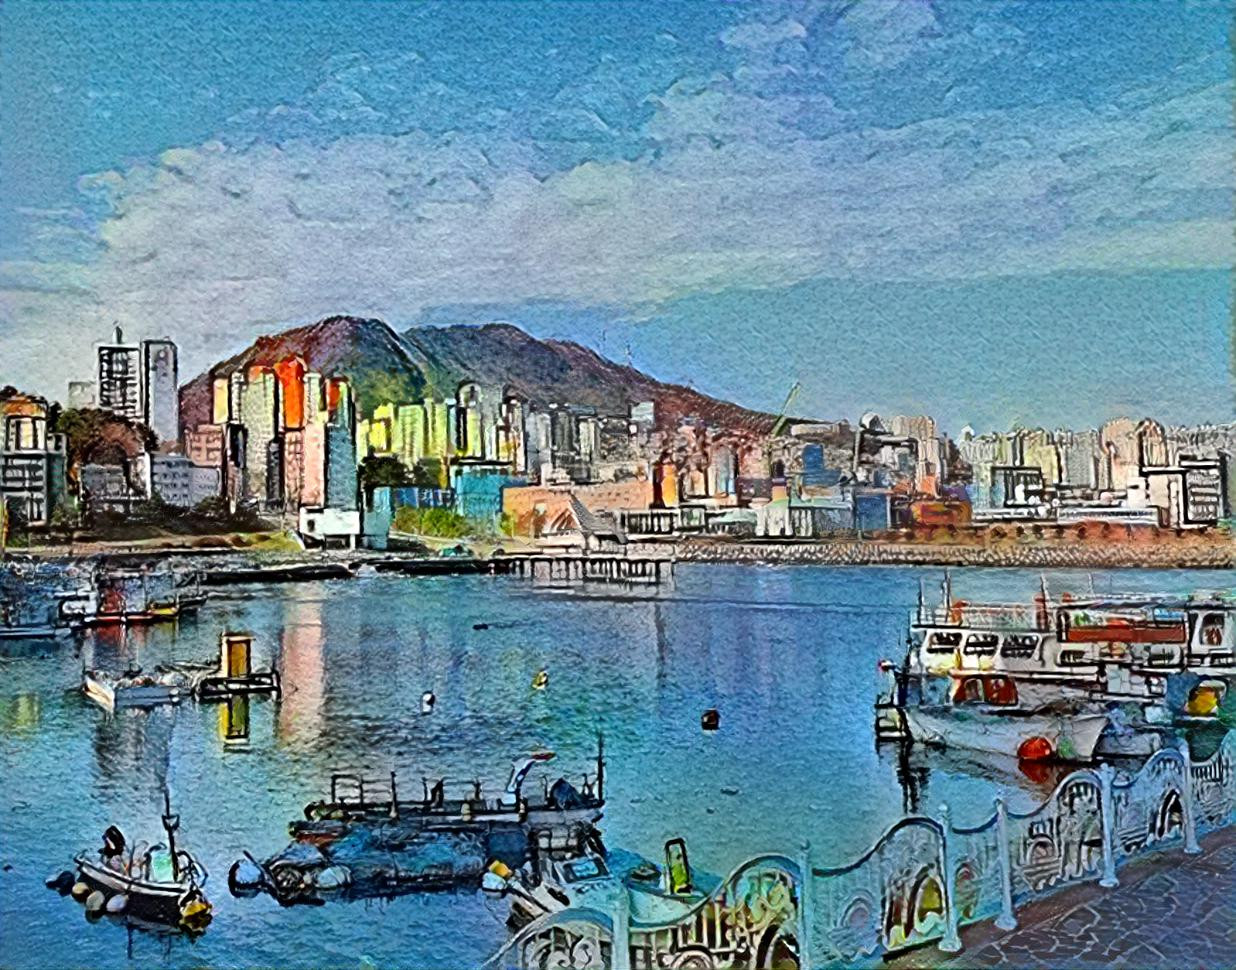 Hari Port in Busan city of Korea